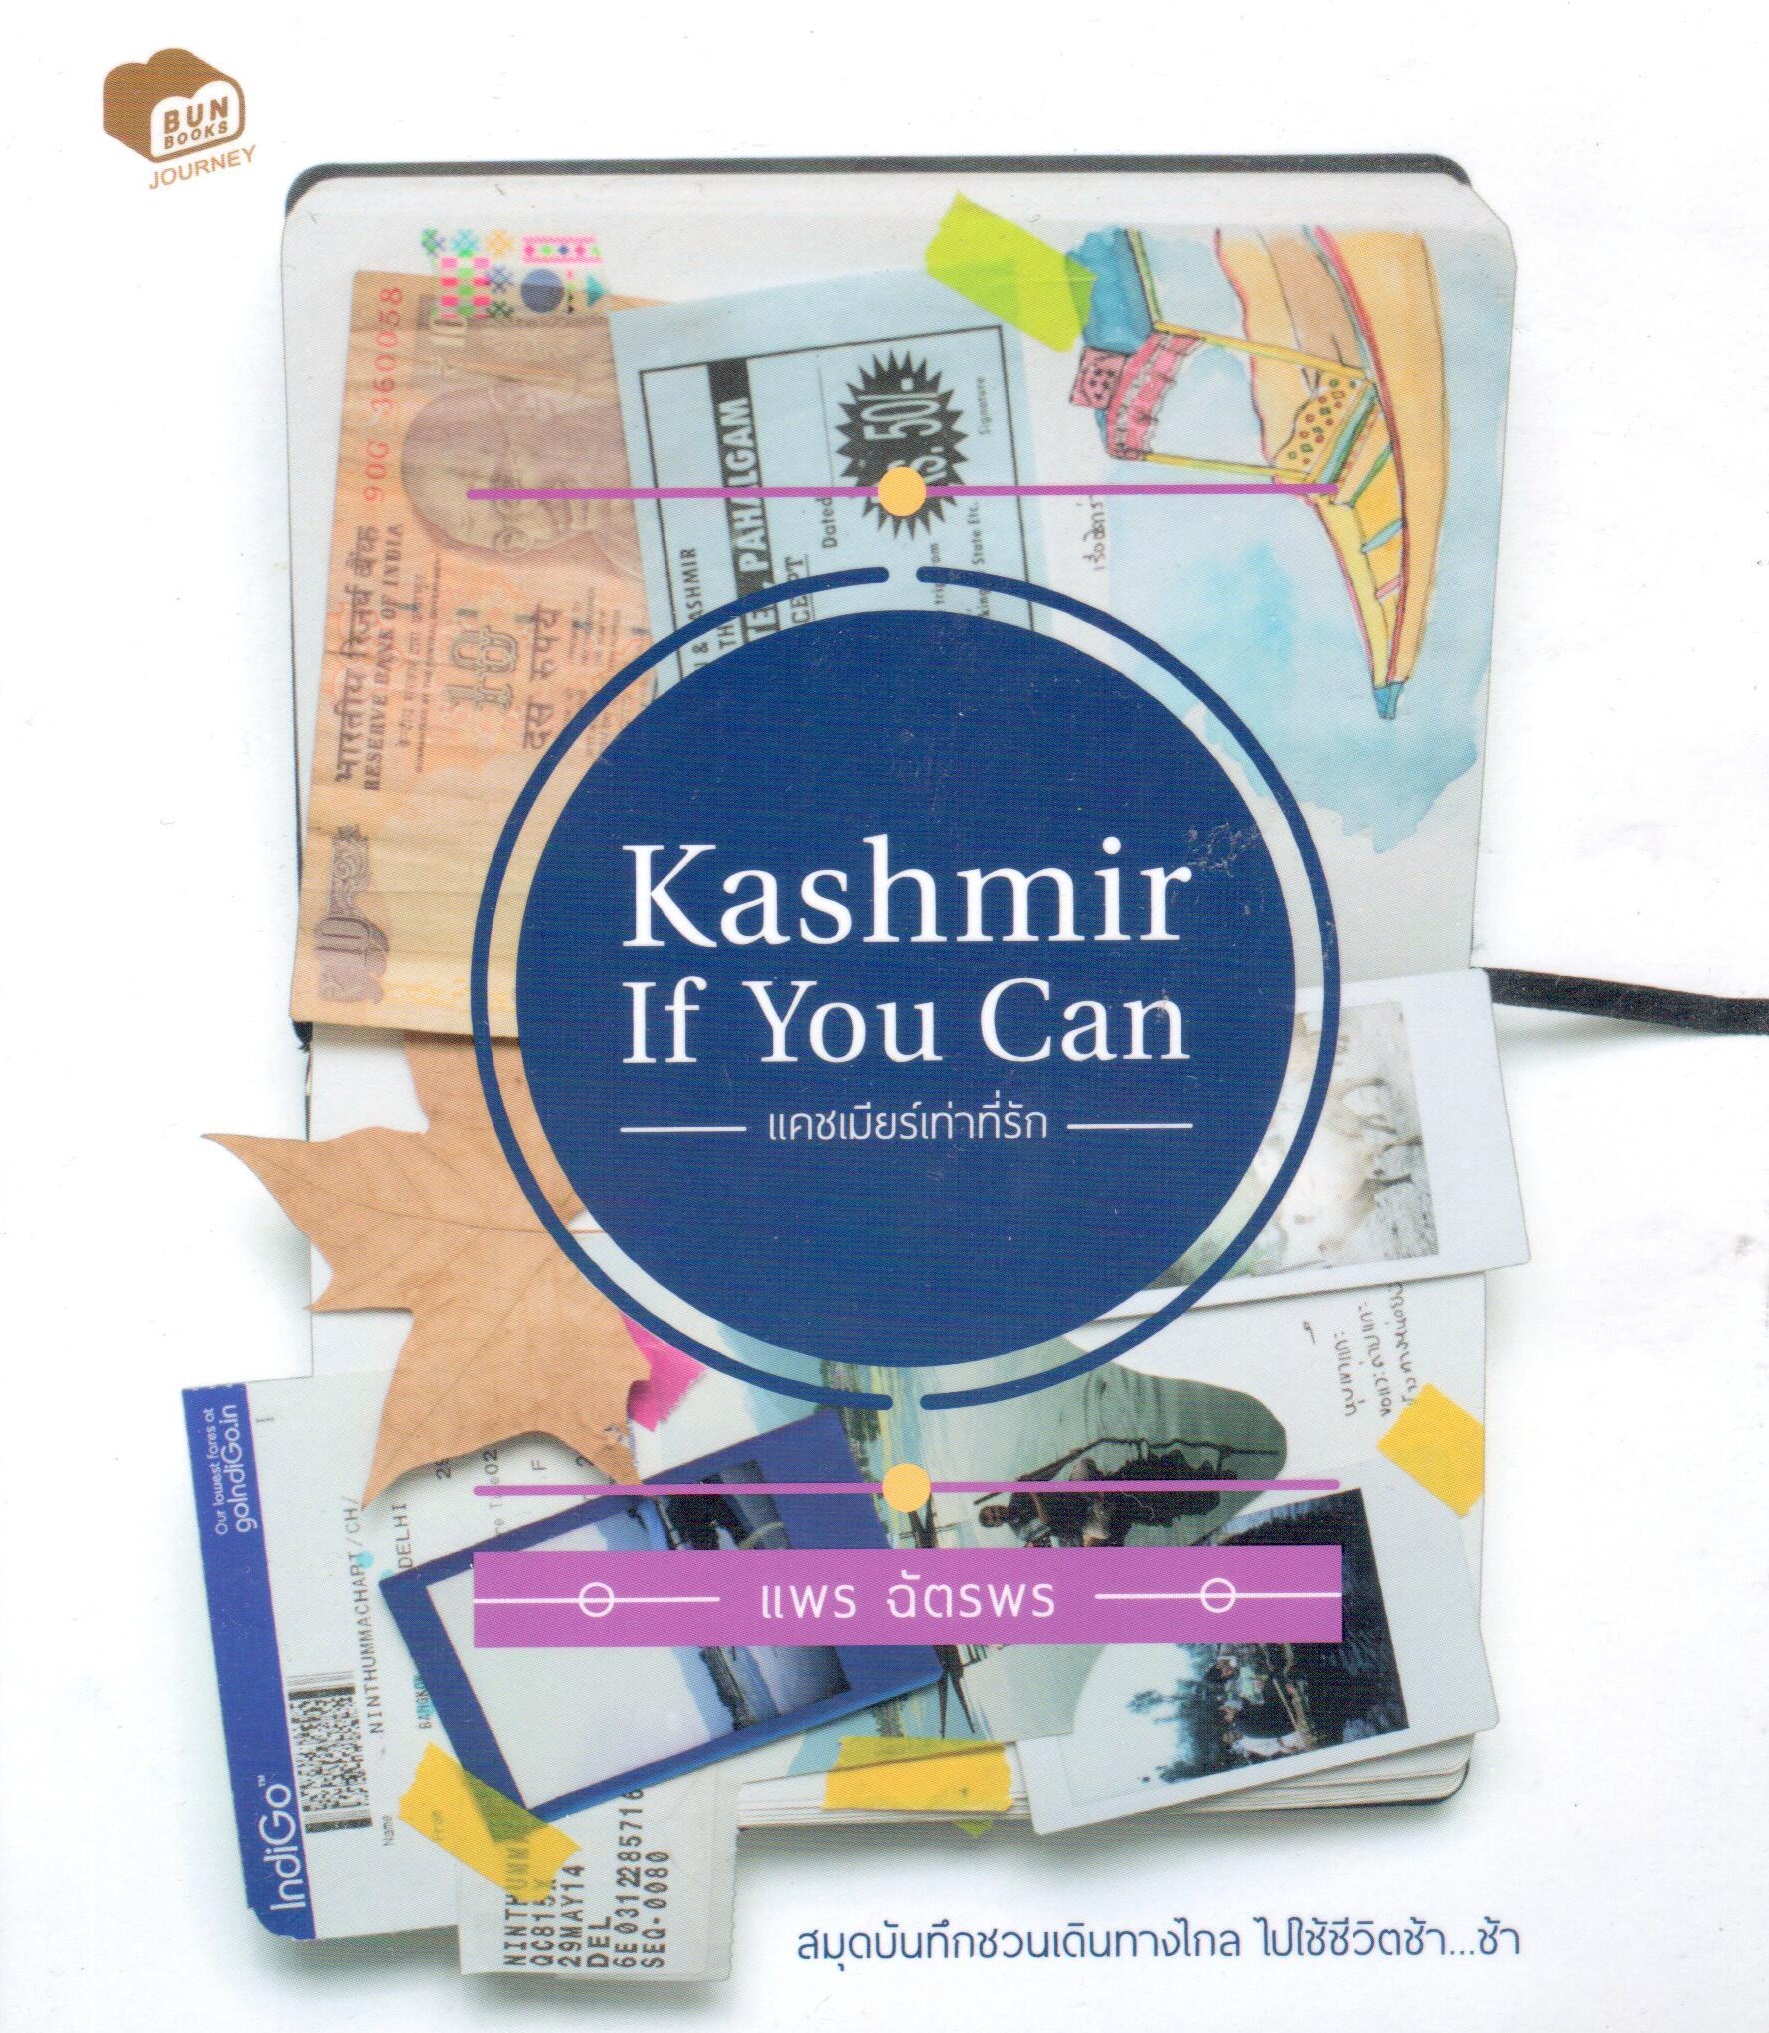 Kashmir If You Can แคชเมียร์เท่าที่รัก